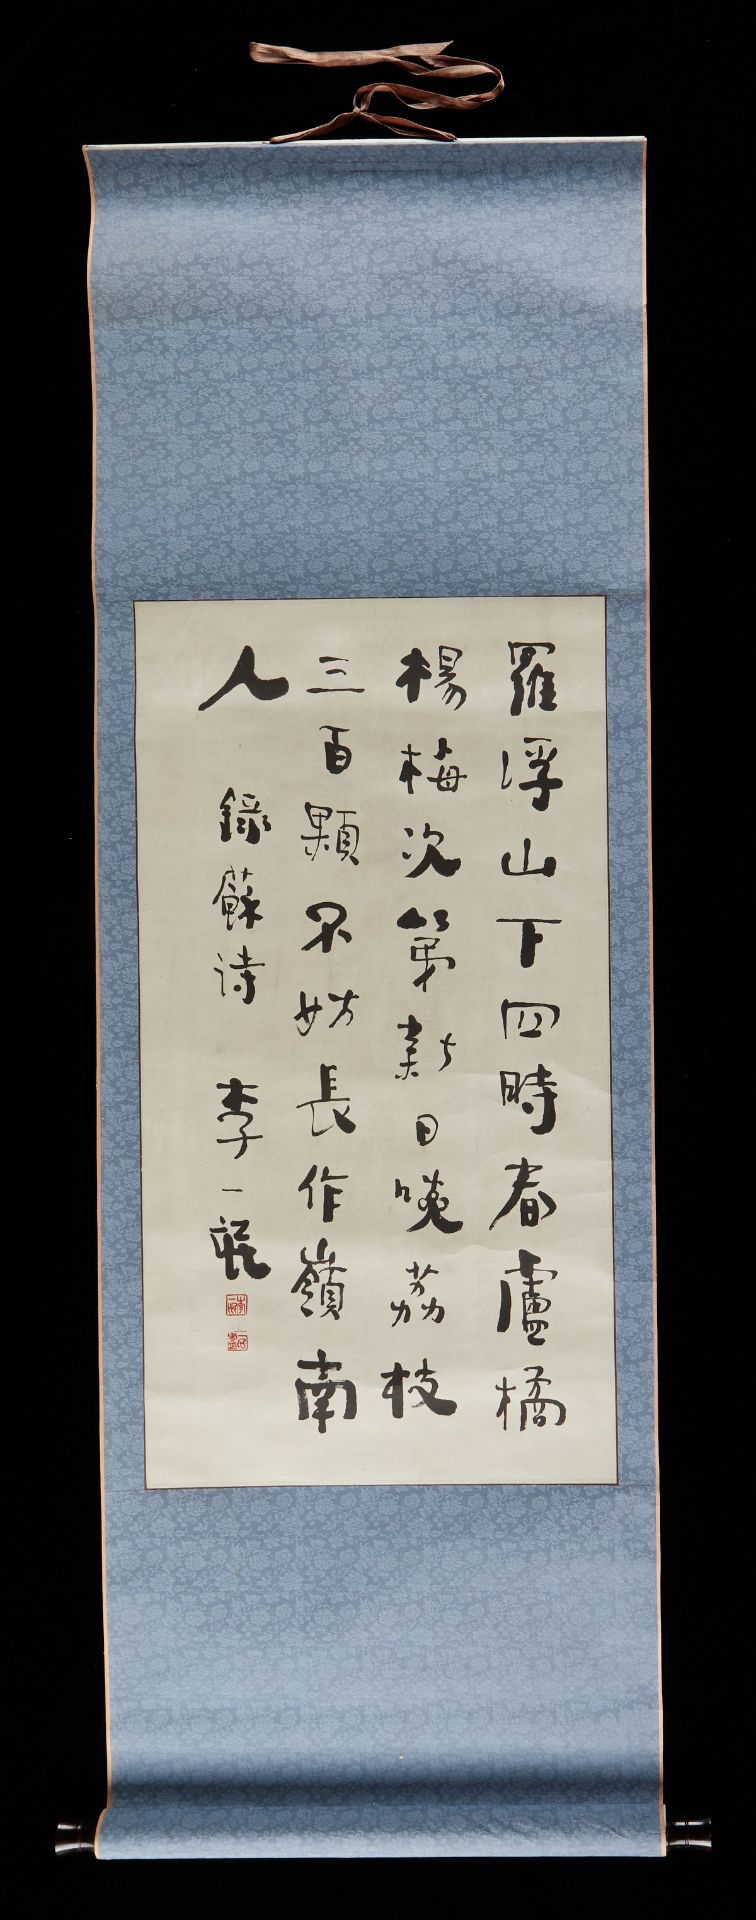 Li Yimang Calligraphy Hanging Scroll Painting - Bild 2 aus 5